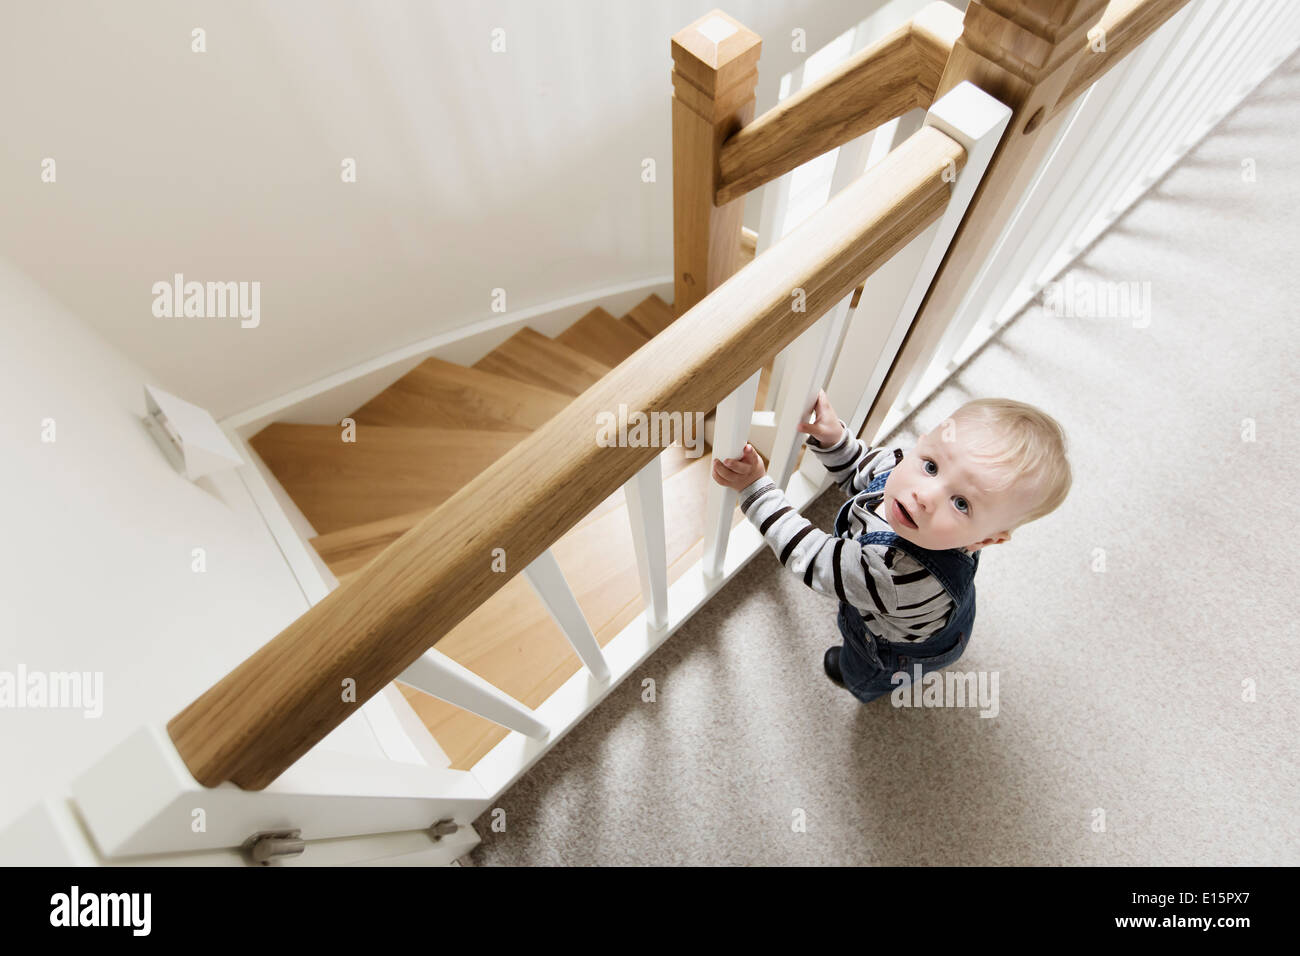 Kleinkind, junge 1 Jahr, bei einer geschlossenen Schutz-Schiene der eine steile Treppe zu Hause stehen Stockfoto